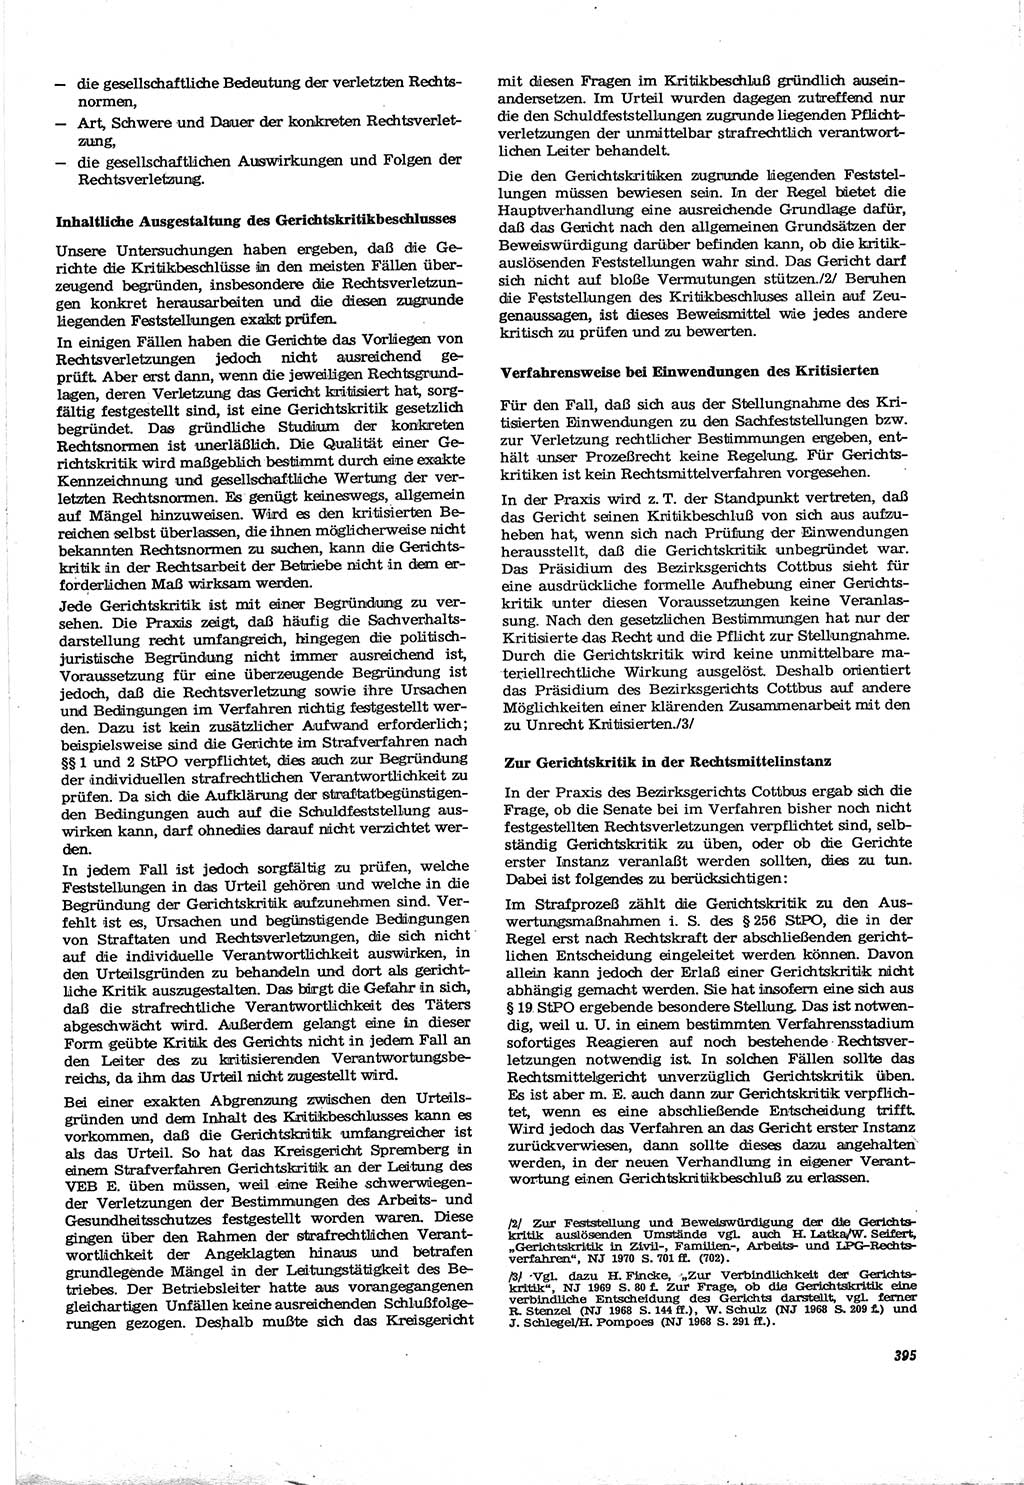 Neue Justiz (NJ), Zeitschrift für Recht und Rechtswissenschaft [Deutsche Demokratische Republik (DDR)], 30. Jahrgang 1976, Seite 295 (NJ DDR 1976, S. 295)